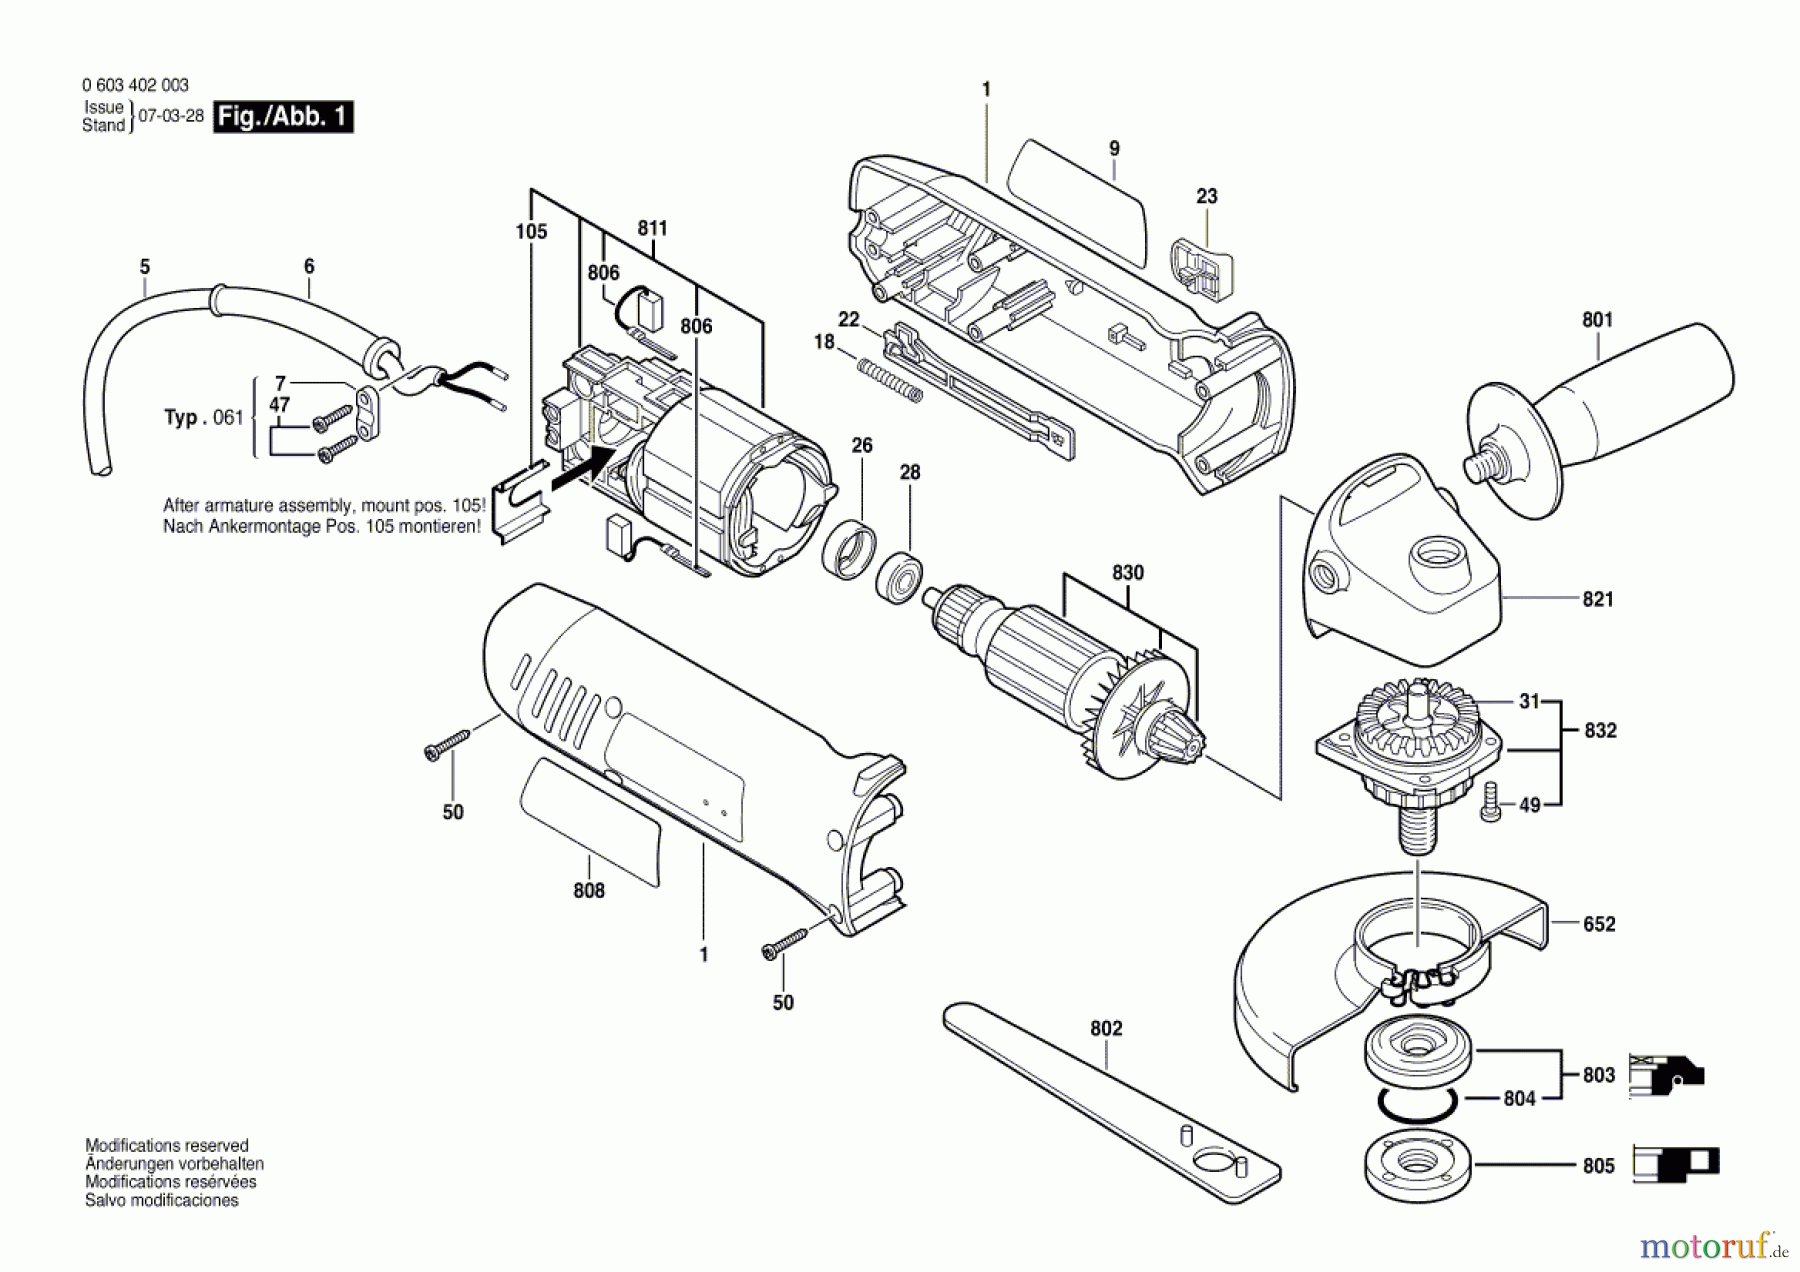  Bosch Werkzeug Winkelschleifer PWS 7-125 Seite 1